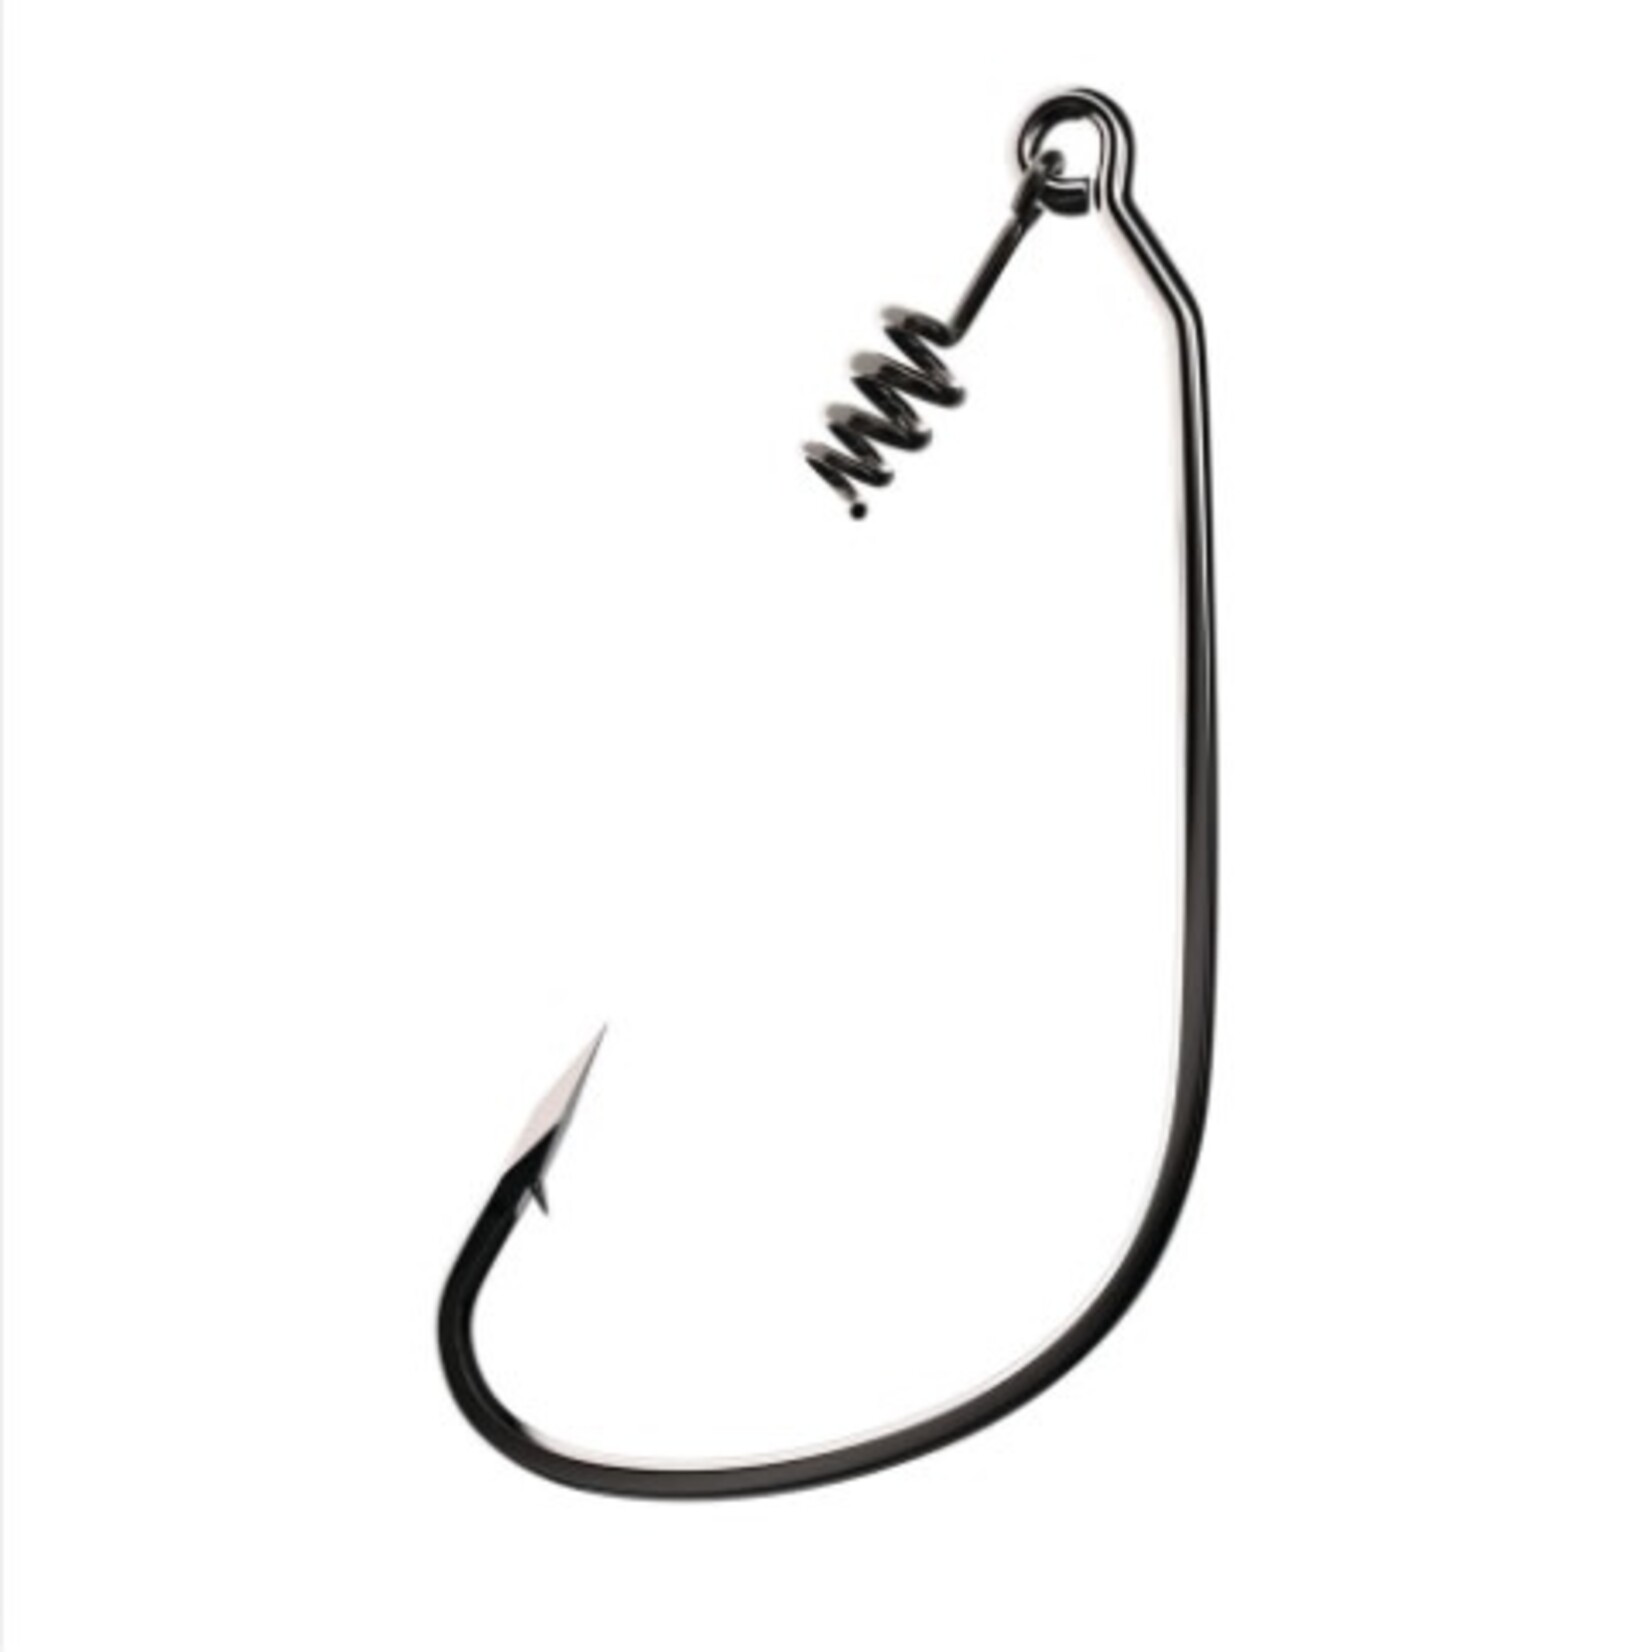 WRIGHT & MCGILL CO. E.Claw TROKAR SWIMBAIT Hook, Plat.Black, Sz 4/0, 5/pk